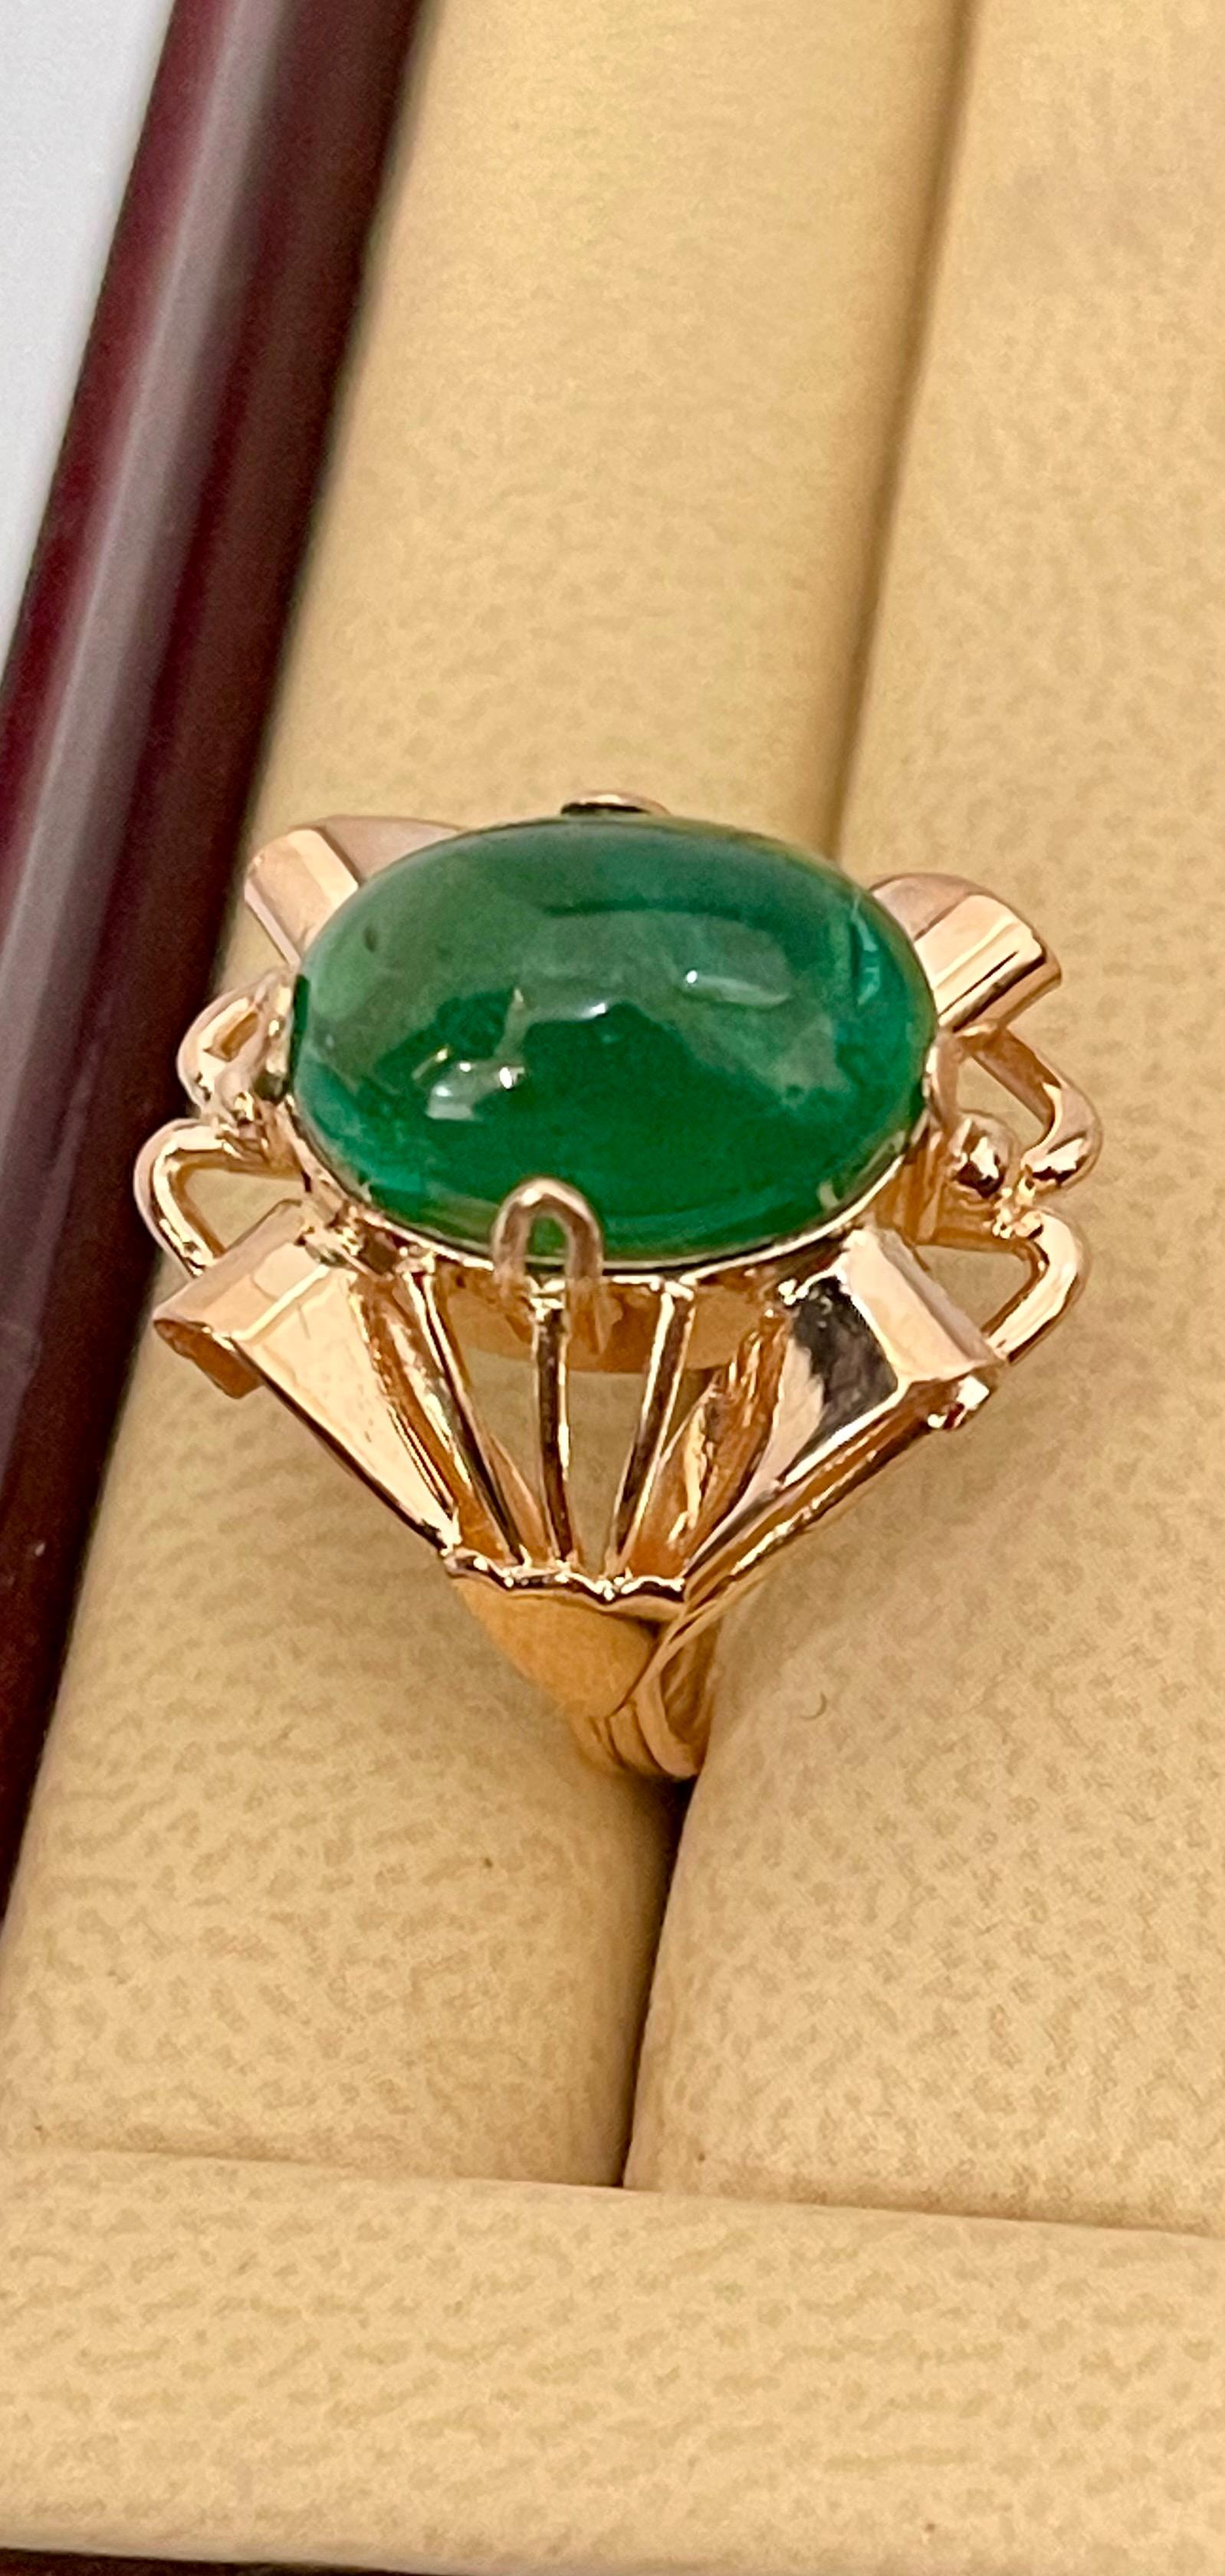 Ein klassischer Cocktail-Ring 
Großformat Smaragd  Cabochon ca. 7 Karat Smaragd , Estate mit keine Farbverbesserung. 
Gold: 14 Karat Rose   Gold ,
Gewicht: 6,4  Gramm mit Stein 
schlichter Ring, kein Klunker 
Smaragd: 7 Karat 
Herkunft: